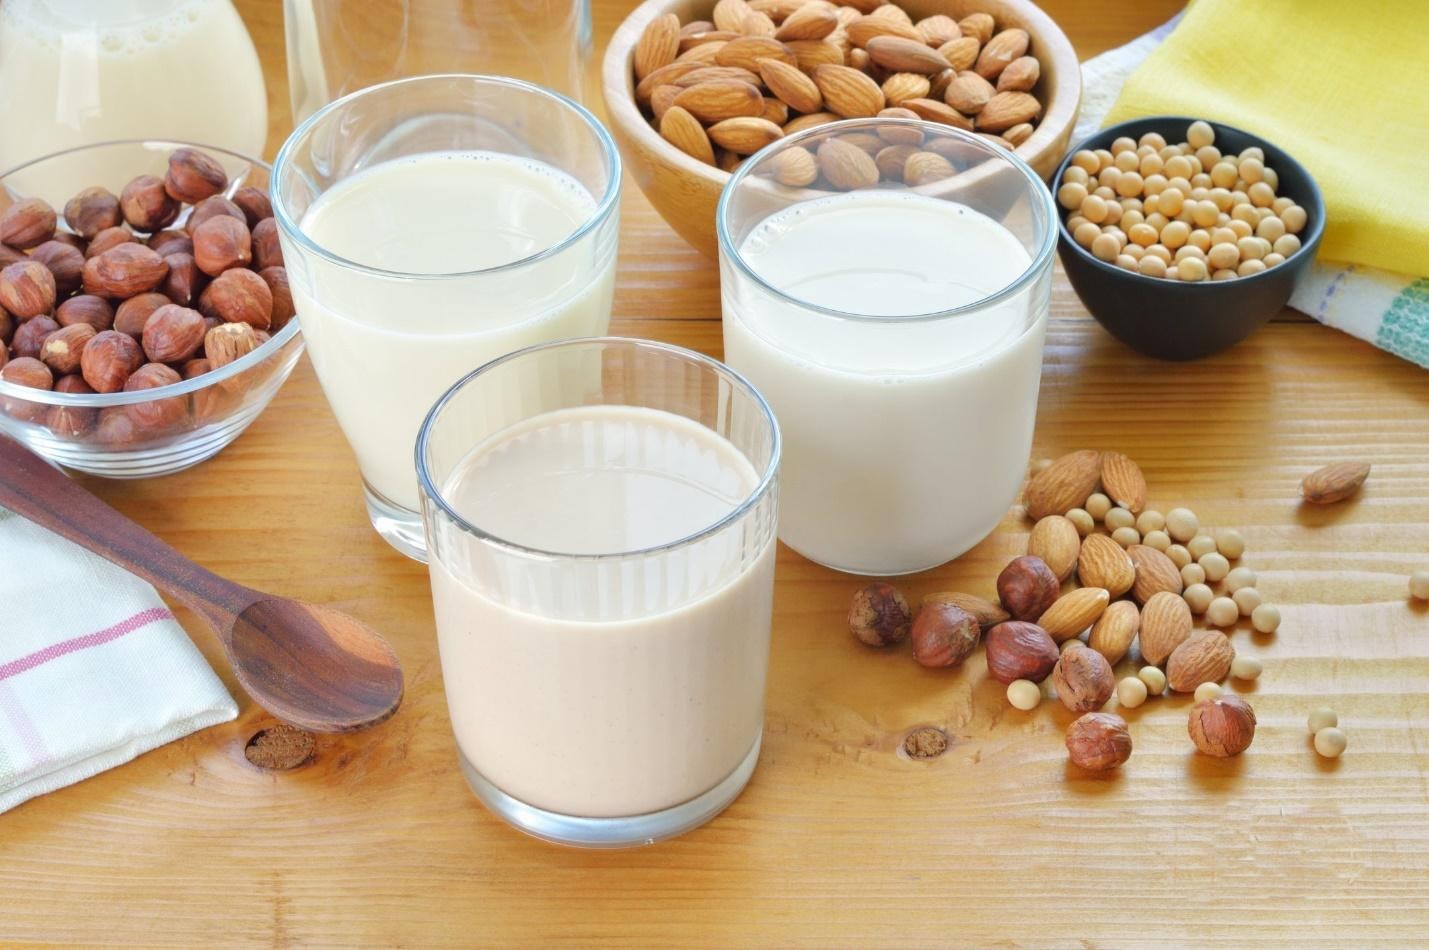 TẠI SAO BẠN PHẢI UỐNG SỮA? SỮA HẠT CÓ TỐT KHÔNG? Ngày nay xu hướng sử dụng các loại hạt để làm sữa đang được các chị em áp dụng rất nhiều để bổ xung chất dinh dưỡng cho các thành viên trong gia đình mình. Vậy lợi ích tác dụng của sữa hạt là gì chúng ta hãy cùng nhau tìm hiểu sau đây Sữa hạt là gì? Sữa hạt là sữa được làm từ các loại hạt từ tự nhiên đầy chất dinh dưỡng cho cơ thể như các loại: hạt đậu nành, hạt hạnh nhân, hạt óc chó, hạt điều, hạt đỗ xanh, hạt ngô, hạt sen……. Các loại hạt giàu chất béo như: mắc ca, óc chó, hạnh nhân… cũng được sử dụng để nấu sữa hạt với hương vị thơm ngon và hàm lượng dinh dưỡng vượt trội. Các loại sữa hạt có thể được xem là một loại lương thực dạng “cháo lỏng”. Theo đó, bạn có thể uống trực tiếp thay vì ăn như bình thường.  Vì vậy, sữa hạt rất thích hợp sử dụng cho trẻ nhỏ đang trong thời kỳ ăn dặm, trẻ em trong thời kỳ phát triển, người già, người ăn chay. Sữa hạt được sử dụng đầu tiên tại Tây Ban Nha như loại đồ uống giải khát bổ sung dinh dưỡng thay thế cho sữa bò vì một số lý do tôn giáo, môi trường. Dần dần khi thương mại phát triển loại sữa hạt này đã du nhập vào các nước ở Châu Âu, Châu Á,…loại sữa hạt phổ biến nhất là sữa đậu nành, sữa gạo, sữa dừa. Dựa theo thành phần dinh dưỡng của các loại hạt, sữa hạt được chia thành hai nhóm chính : Nhóm 1: Sữa hạt giàu chất béo, đạm (hạnh nhân, óc chó, các loại đậu…) Nhóm 2: Sữa hạt ngũ cốc (yến mạch, gạo lứt, khoai lang, ngô…) Tác dụng của sữa hạt cho sức khỏe chúng ta Uống sữa hạt thường xuyên rất tốt cho cơ thể chúng ta, cung cấp những chất dinh dưỡng cần thiết. Trong sữa hạt có chứa các chất đạm dồi dào giúp cơ thể khỏe khoắn và tràn đầy năng lượng.  Sữa hạt cũng giàu chất xơ, vitamin, khoáng chất và chất chống oxy… Theo nghiên cứu của các chuyên gia khoa học, uống sữa hạt thường xuyên giúp làm chậm quá trình lão hóa, ổn định huyết áp, tim mạch nhờ vào hàm lượng kali dồi dào. Một số loại sữa hạt cung cấp vitamin C giúp tăng cường chức năng hệ miễn dịch, ngăn ngừa virus, làm đẹp da. Một số loại sữa hạt bổ sung vitamin A, D3, E, hợp chất iso-flavones (có trong đậu nành) giúp bảo vệ và cải thiện thị lực, phát triển chiều cao và cân bằng nội tiết tố estrogen cho phái nữ, giúp bạn làn da tươi trẻ, mịn màng và tăng số đo vòng 1 hiệu quả. Ngoài ra, các loại sữa hạt cũng giúp cải thiện lượng đường trong máu, ngăn ngừa và hỗ trợ điều trị bệnh tiểu đường, cải thiện tình trạng thiếu máu do thiếu sắc, hỗ trợ quá trình đông máu, giúp vết thương nhanh được cầm máu. Một số nghiên cứu đã chỉ ra rằng uống sữa hạt thường xuyên giúp làm chậm quá trình lão hóa, tim mạch, huyết áp ổn định. Và một số hạt còn cung cấp lượng vitamin C, tăng sức đề kháng và sức khỏe hệ miễn dịch cho cơ thể linh hoạt, năng động. Ngoài ra trong sữa hạt, đặc biệt là hạt óc chó có chứa rất nhiều protein và Omega 3. 2 chất này rất tốt cho hệ thần kinh, ngừa suy giảm trí nhớ, tăng cường tư duy và giúp giảm áp lực, mệt mỏi. Rất tốt cho phụ nữ mang thai và trẻ nhỏ đang trong thời kỳ phát triển trí não hay trong thời gian thi cử của các trẻ. Sữa hạt còn là một trong những đồ ăn thức uống giàu canxi giúp phát triển chiều cao ở trẻ tốt nhất. Lợi ích của các loại sữa hạt cho sức khỏe chúng ta Tác dụng của sữa hạt đậu nành Trong sữa đậu nành có vitamin A, B1, B2, D, PP, K, F và các men có ích cho tiêu hóa. Sữa đậu nành có hàm lượng dinh dưỡng cao tương đương với sữa bò.  Đối với phụ nữ và trẻ nhỏ sữa đậu nành có tác dụng rất tốt là một thực phẩm lành mạnh cho trẻ nhỏ đang phát triển. Chống loãng xương và phòng trị ung thư vú cho các chị em đặc biệt là phụ nữ lớn tuổi.  Còn đối với nam giới sữa đậu nành thường không có lợi. Hiện dòng Sữa đậu nành MARUSAN là sữa hạt được sản xuất và được ưu chuộng nhất tại Nhật Bản, với nhiều vị khác nhau giúp bạn có thể thay đổi theo đúng khẩu vị của mình. Đây được xem là lựa chọn đầu tiên của người dân xứ sở hoa anh đào. Có tác dụng hỗ trợ đông máu Sữa hạt điều rất giàu vitamin K, rất cần thiết cho quá trình đông máu. Không nhận đủ vitamin K có thể dẫn đến chảy máu quá nhiều. Mặc dù thiếu vitamin K ở người trưởng thành khỏe mạnh là rất hiếm, nhưng những người mắc bệnh viêm ruột (IBD) và các vấn đề kém hấp thu khác có nhiều khả năng bị thiếu. Tiêu thụ thực phẩm giàu vitamin K, chẳng hạn như sữa hạt điều, có thể giúp duy trì đủ lượng protein này. Tuy nhiên, việc tăng lượng vitamin K trong chế độ ăn uống có thể làm giảm hiệu quả của thuốc làm loãng máu Nếu bạn đang dùng thuốc làm loãng máu, hãy tham khảo ý kiến nhà cung cấp dịch vụ chăm sóc sức khỏe của bạn trước khi thay đổi chế độ ăn uống. Có tác dụng cải thiện kiểm soát lượng đường trong máu Uống sữa hạt điều có thể giúp kiểm soát lượng đường trong máu – đặc biệt là ở những người mắc bệnh tiểu đường. Hạt điều có chứa các hợp chất có thể thúc đẩy kiểm soát lượng đường trong máu thích hợp trong cơ thể bạn. Một nghiên cứu cho thấy một hợp chất trong hạt điều gọi là axit anacardic đã kích thích sự hấp thu đường huyết lưu thông trong các tế bào cơ chuột. Nghiên cứu về một loại hạt tương tự cũng chứa axit anacardic cho thấy chiết xuất từ sữa hạt làm giảm đáng kể lượng đường trong máu ở chuột mắc bệnh tiểu đường loại 2. Ngoài ra, sữa hạt điều không có đường sữa và do đó có ít carbs hơn sữa. Sử dụng nó thay thế sữa bò có thể giúp kiểm soát lượng đường trong máu ở những người mắc bệnh tiểu đường. Tuy nhiên, vẫn cần nhiều nghiên cứu hơn để hiểu rõ hơn về lợi ích của sữa hạt điều trong việc quản lý bệnh tiểu đường. Tăng cường hệ miễn dịch Chất chống ô xy hóa có thể giúp chống lại bệnh tật và viêm bên trong cơ thể. Sữa hạt  giàu chất chống ô xy hóa có thể tăng cường hệ miễn dịch bằng cách ngăn ngừa tổn thương tế bào do các gốc tự do gây ra. Duy trì một làn da khỏe mạnh Các loại đạm động vật thường đẩy nhanh quá trình lão hóa, axit hóa đường ruột dẫn tới cơ thể dễ bị nhiễm độc, phát sinh mụn nhọt, các vết thâm nám do bị độc tố tích tụ. Sữa hạt lại chứa các thành phần tự nhiên chống lão hóa, tốt cho hệ tiêu hóa, giúp đào thải độc tố, giúp duy trì làn da hồng hảo, sáng khỏe Dễ tiêu hóa Nhiều người có hệ thống tiêu hóa nhạy cảm với một số loại thực phẩm, như đậu nành, đường sữa và gluten. Bạn sẽ không phải lo lắng gì về việc tiêu hóa khi uống sữa hạt. Nó rất dễ tiêu hóa và không chứa bất kỳ chất gây dị ứng thực phẩm nào Tăng cường sức khỏe của mắt Gutein và zeaxanthin là những hợp chất chống ô xy hóa mạnh mẽ có trong sữa hạt. Những chất chống ô xy hóa này có thể thúc đẩy thị lực khỏe mạnh, cũng như bảo vệ đôi mắt khỏi bị tổn thương do stress ô xy hóa. Bạn có thể bảo vệ đôi mắt khỏi nguy cơ mất thị lực và các vấn đề về mắt khác bằng cách thêm sữa hạt vào chế độ ăn uống của bạn Có thể ngăn ngừa ung thư Sữa hạt có nhiều a xít anacardic, một hợp chất có đặc tính chống ung thư. Các nghiên cứu cho thấy a xít anacardic giúp ngăn ngừa sự tăng trưởng và phát triển của các tế bào ung thư. Với nhiều tác dụng vô cùng hữu ích cho cơ thể bạn vậy tại sao bạn không sử dụng sữa hạt dành cho gia đình thân yêu của bạn ngay hôm nay. Chúc các bạn có những lựa chọn thông minh và sáng suốt về những thực phẩm cung cấp cho cơ thể khỏe mạnh.